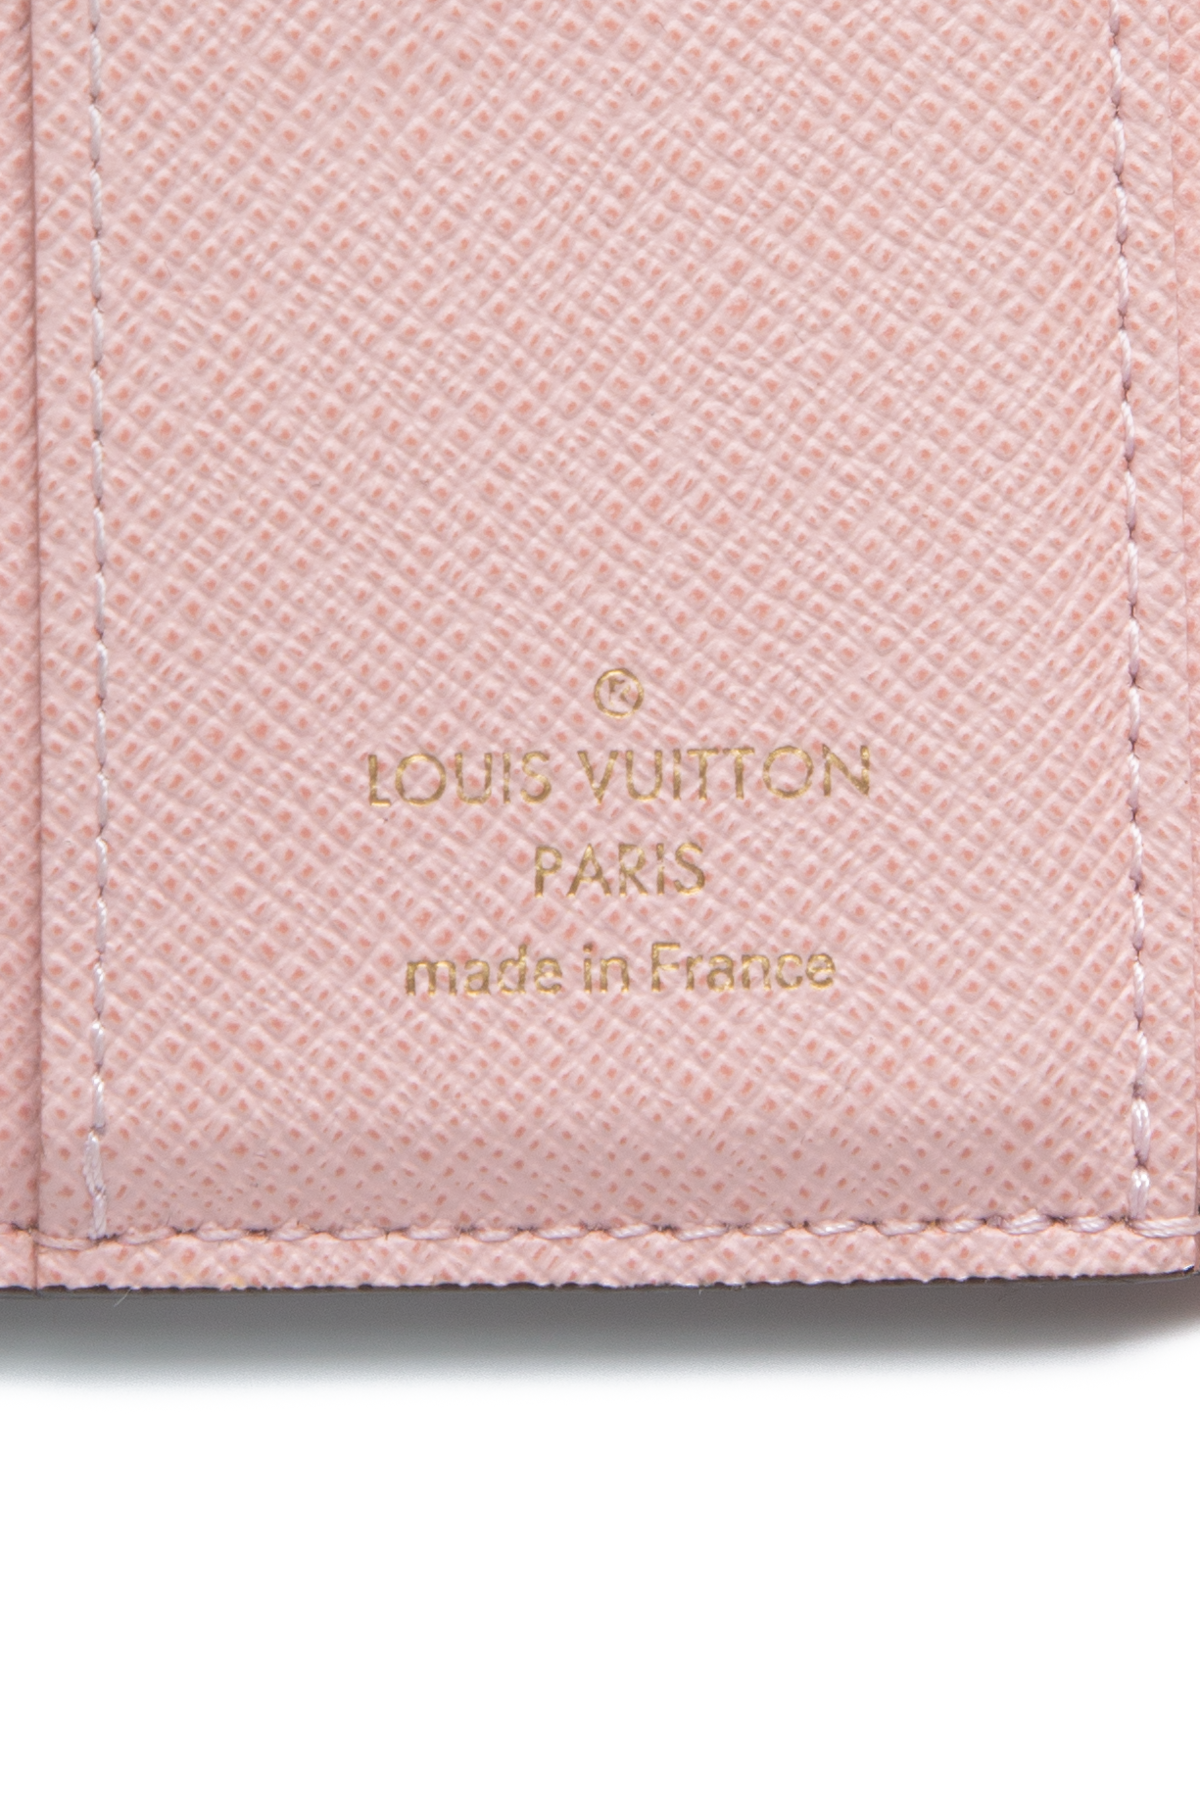 Louis Vuitton VICTORINE Wallet vs ZOE Wallet